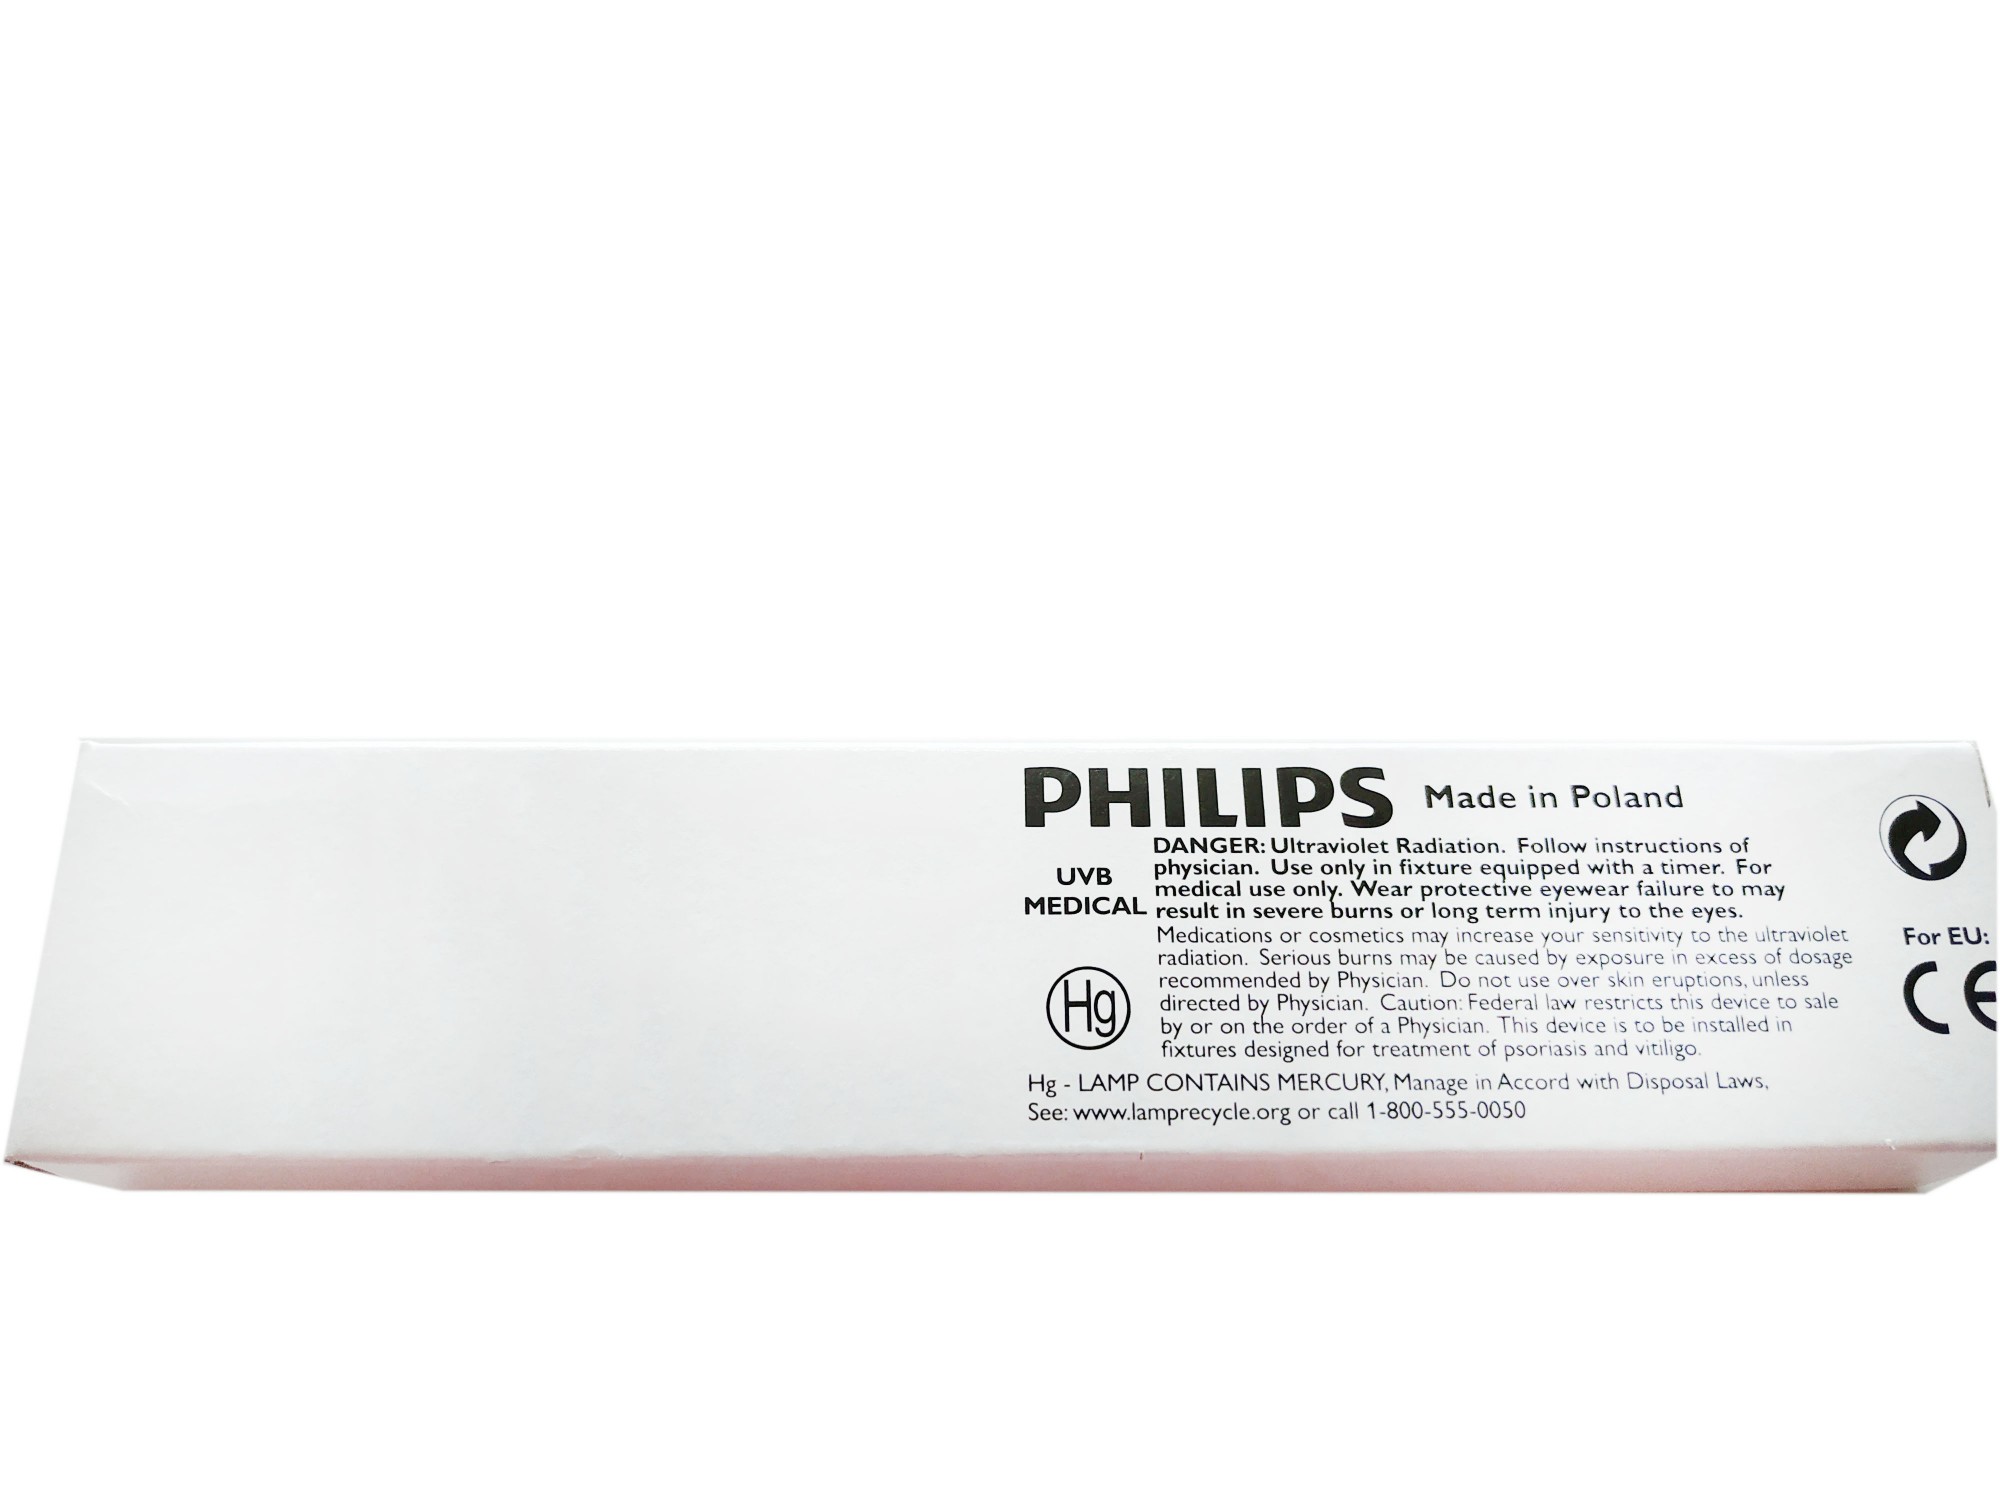 Kaufen Philips PL-S 9W 01 2P Schmalband-UVB-Glühbirne;Philips PL-S 9W 01 2P Schmalband-UVB-Glühbirne Preis;Philips PL-S 9W 01 2P Schmalband-UVB-Glühbirne Marken;Philips PL-S 9W 01 2P Schmalband-UVB-Glühbirne Hersteller;Philips PL-S 9W 01 2P Schmalband-UVB-Glühbirne Zitat;Philips PL-S 9W 01 2P Schmalband-UVB-Glühbirne Unternehmen